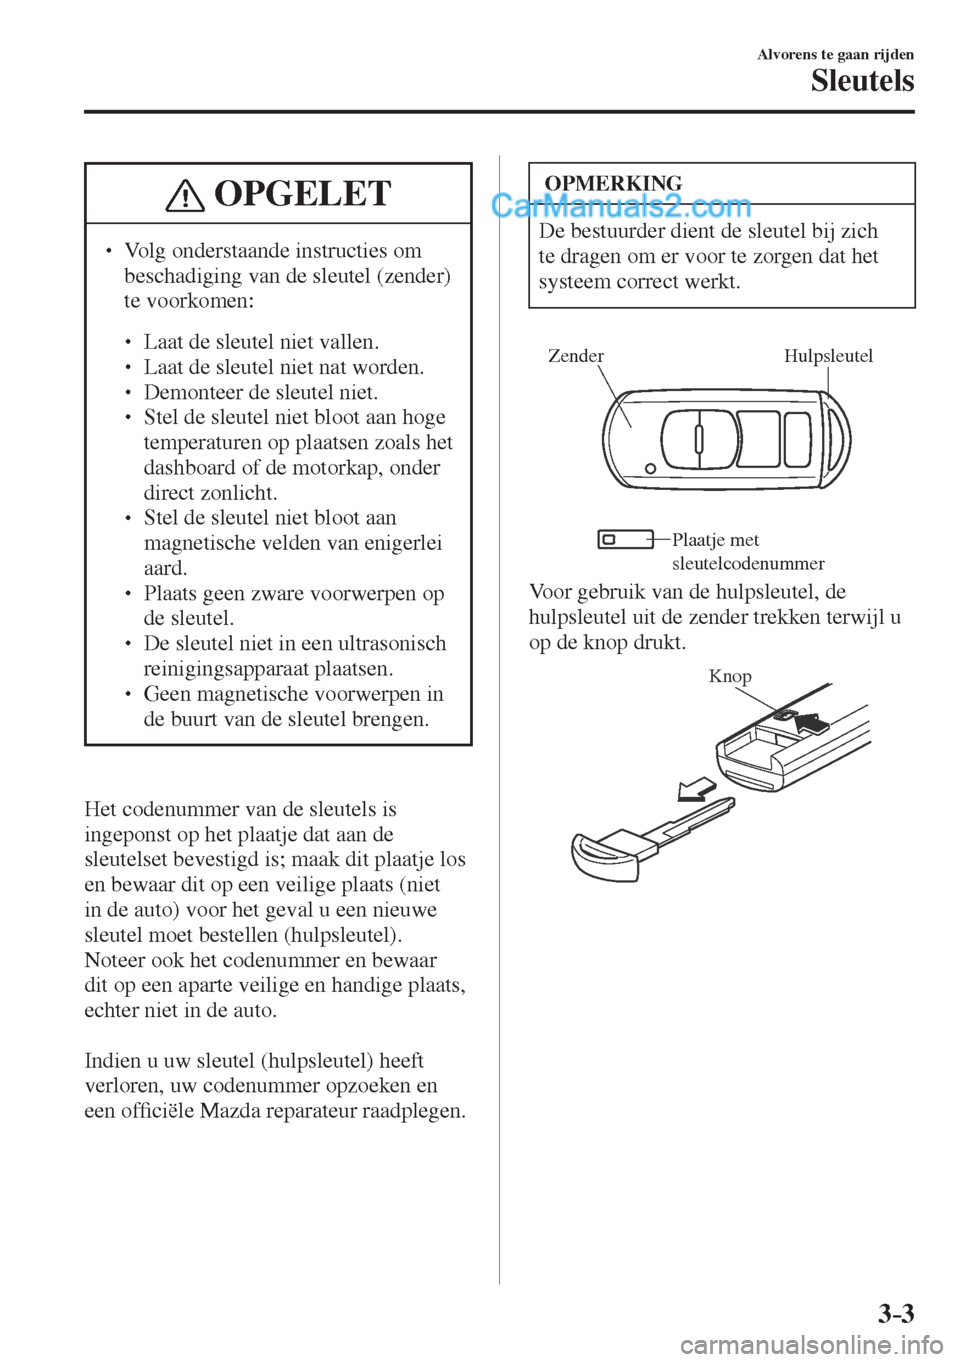 MAZDA MODEL CX-5 2017  Handleiding (in Dutch) 3–3
Alvorens te gaan rijden
Sleutels
 OPGELET
� � ��  Volg onderstaande instructies om 
beschadiging van de sleutel (zender) 
te voorkomen: 
 � �
�
�
� ��  Laat de sleutel niet vallen.�
�